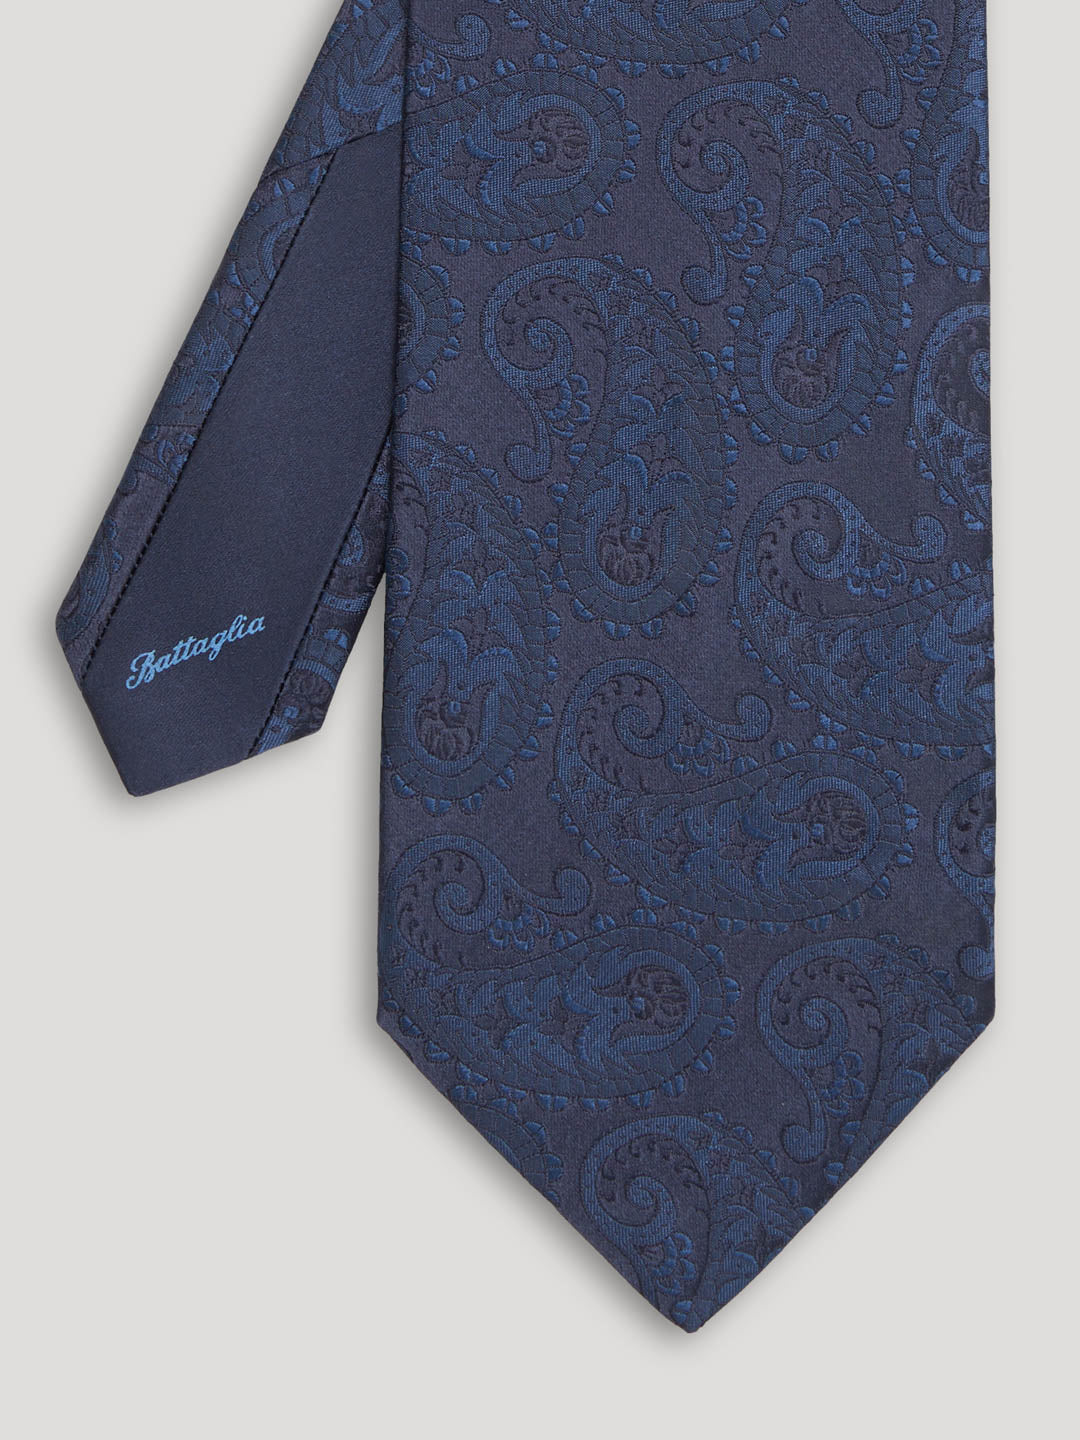 Blue paisley silk tie. 